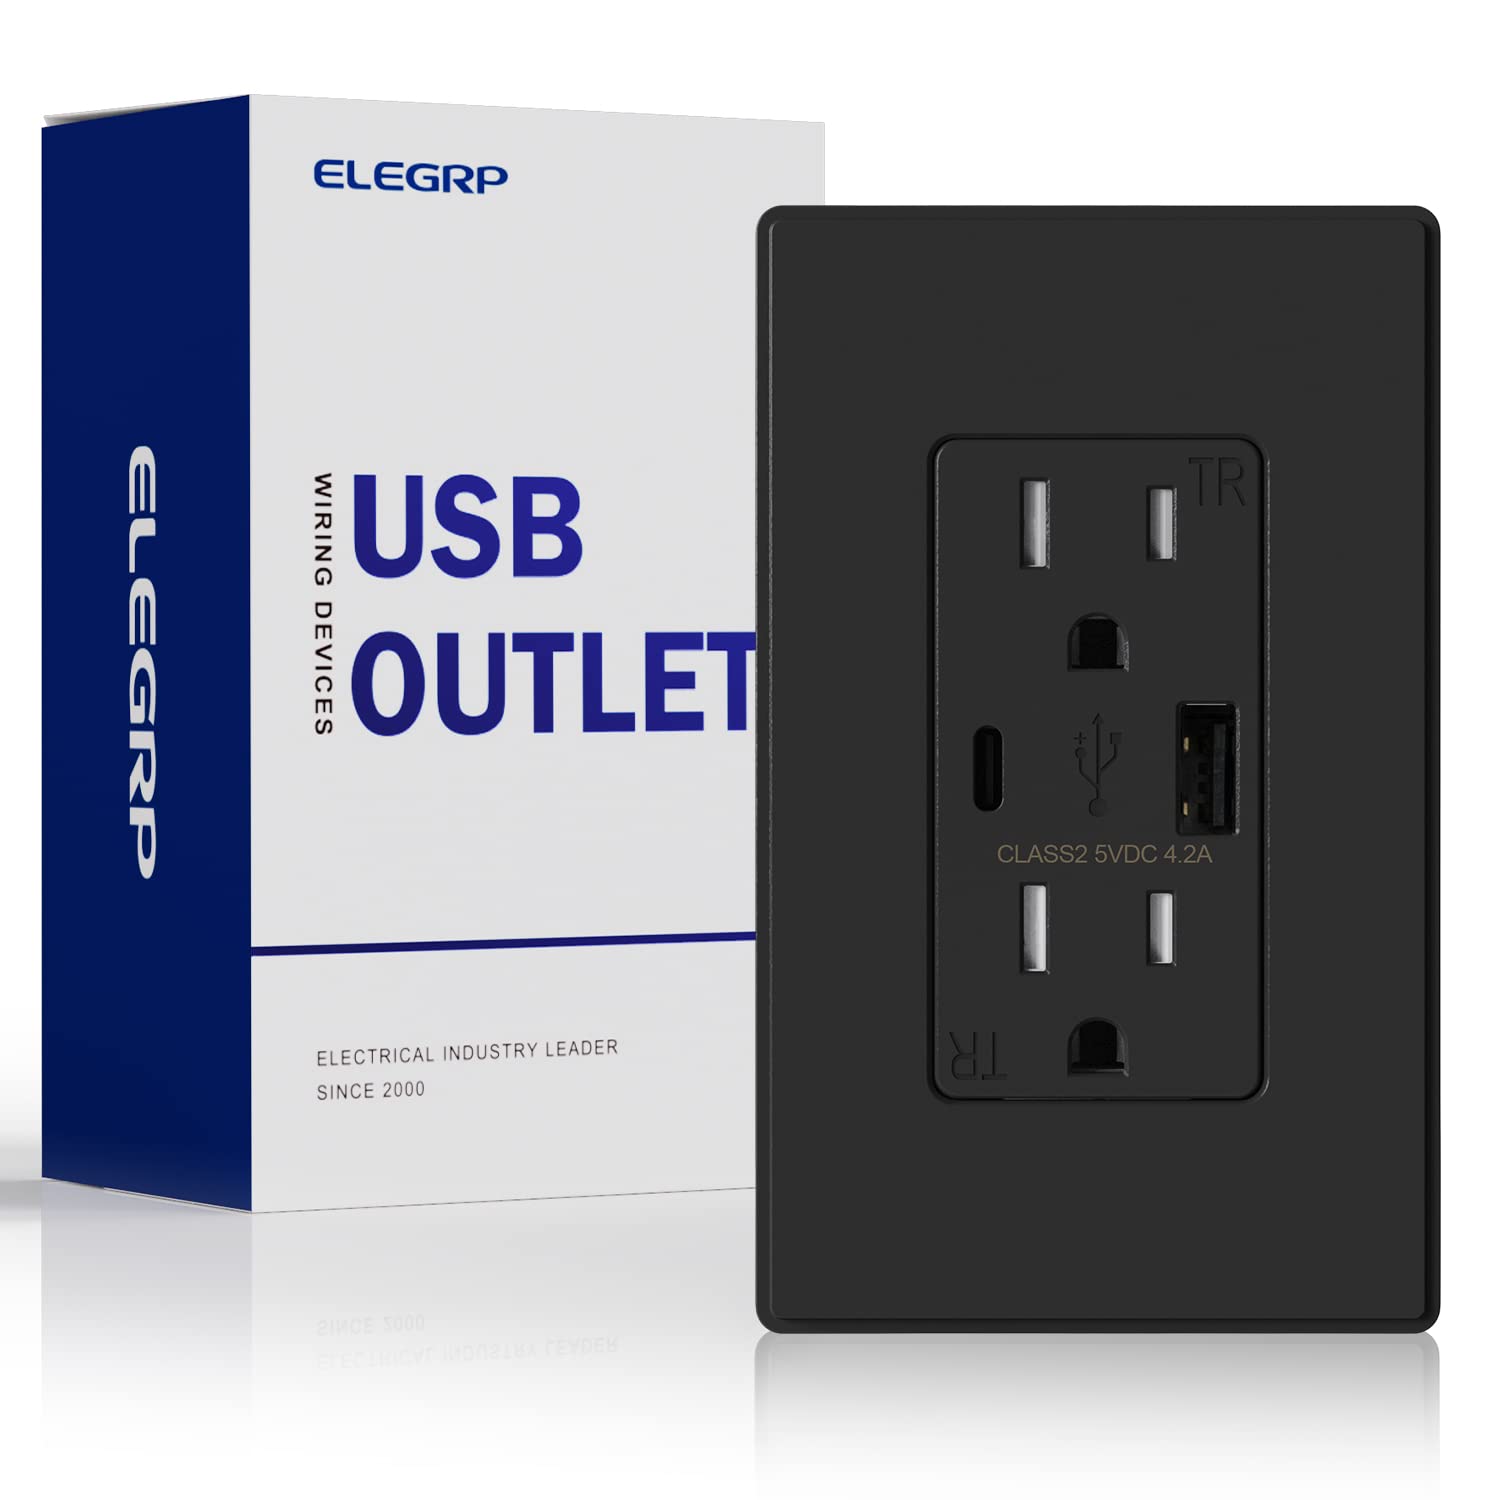 ELEGRP USB コンセント、タイプ C USB 壁充電器コンセント、耐タンパー性レセプタクル...